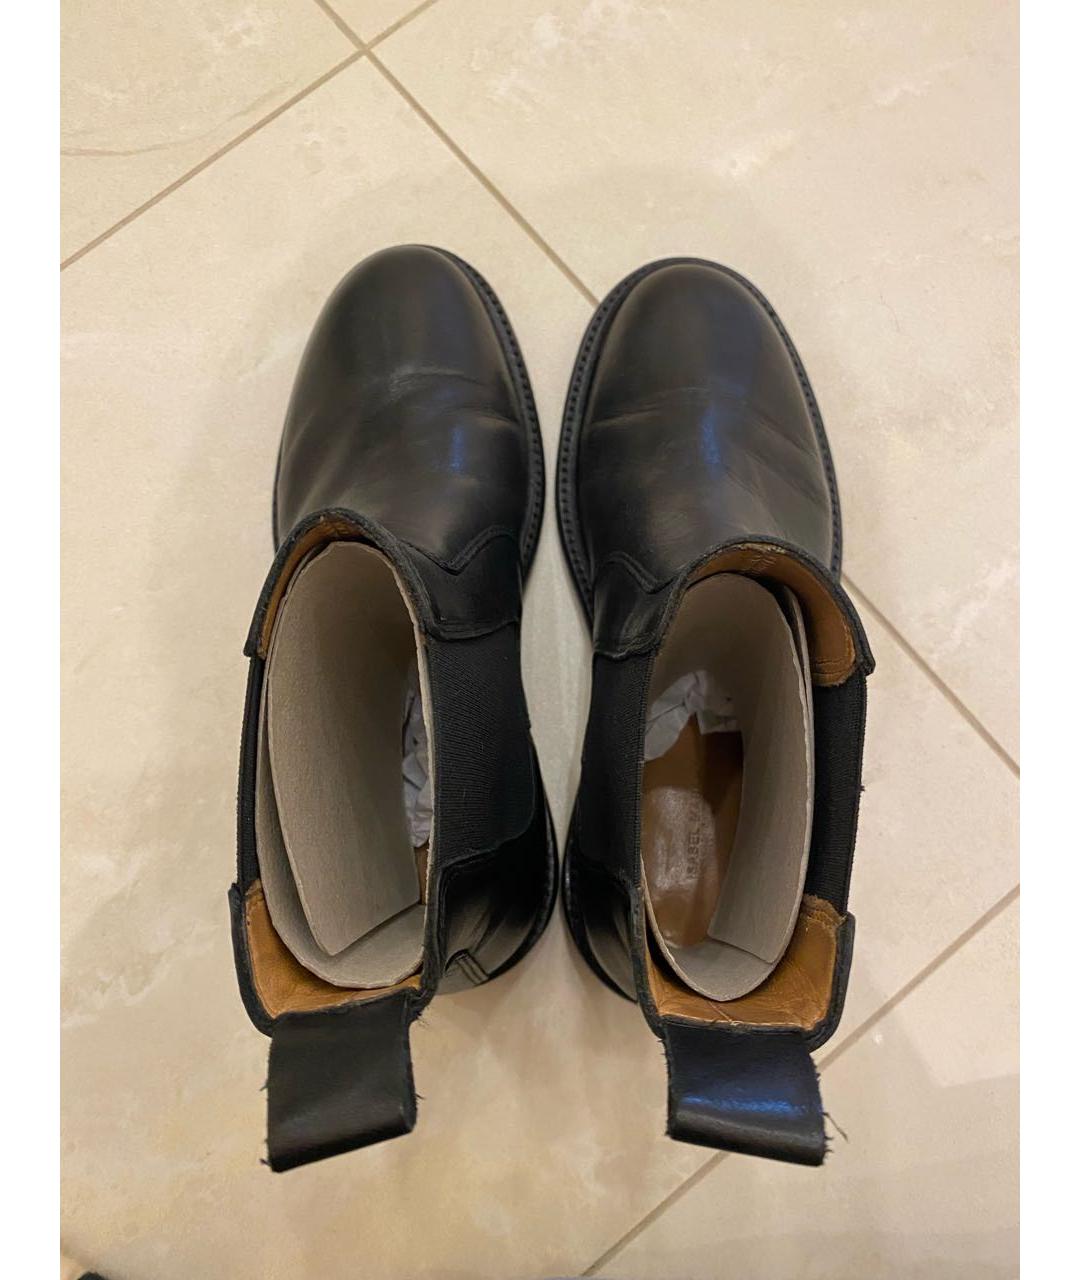 ISABEL MARANT Черные кожаные ботинки, фото 5